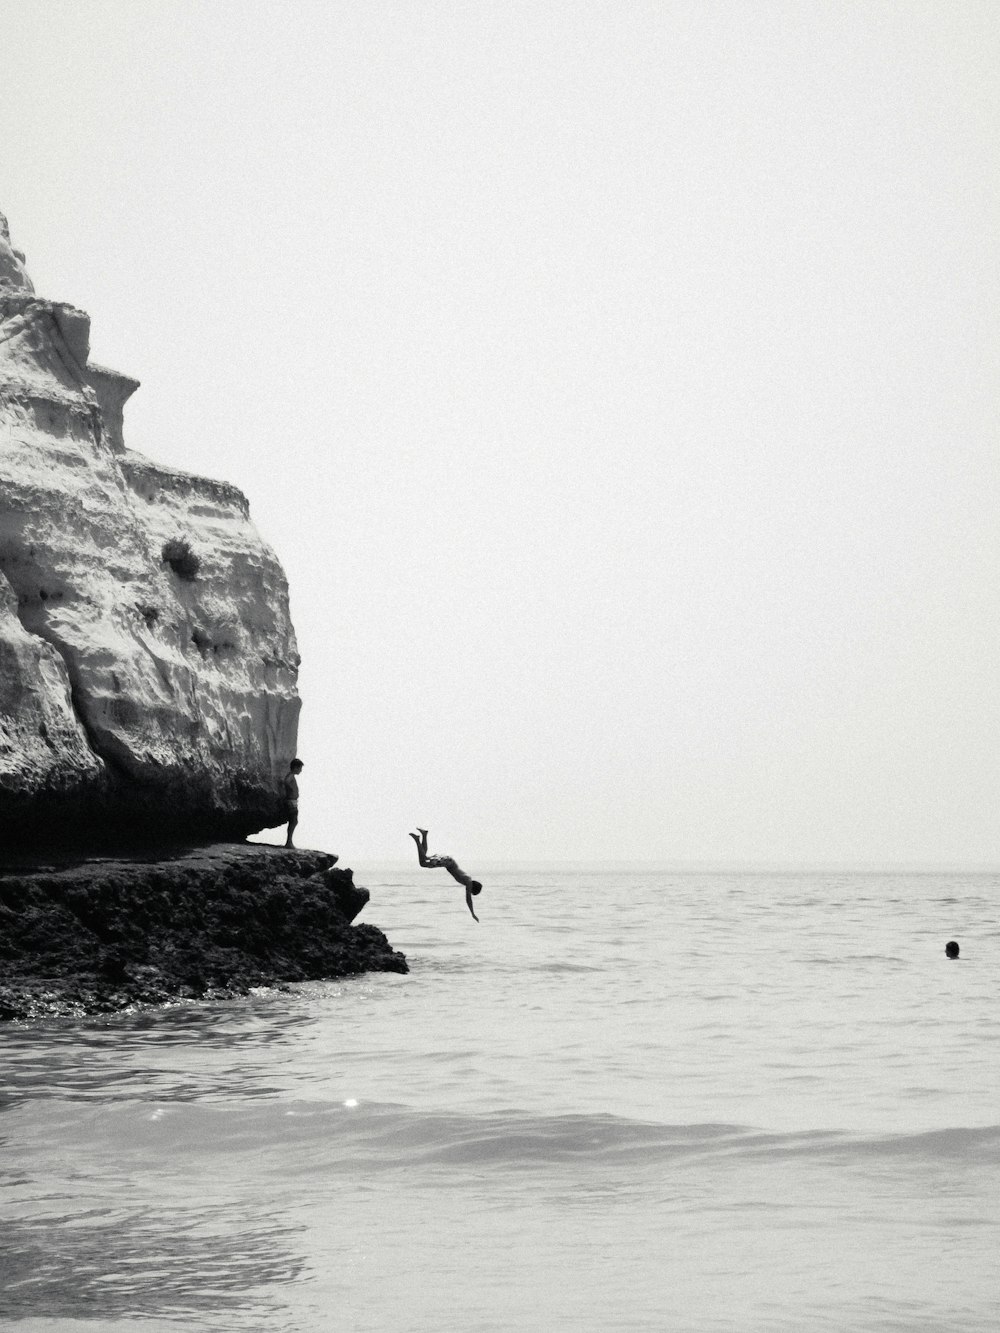 Una foto en blanco y negro de un pájaro volando sobre el océano